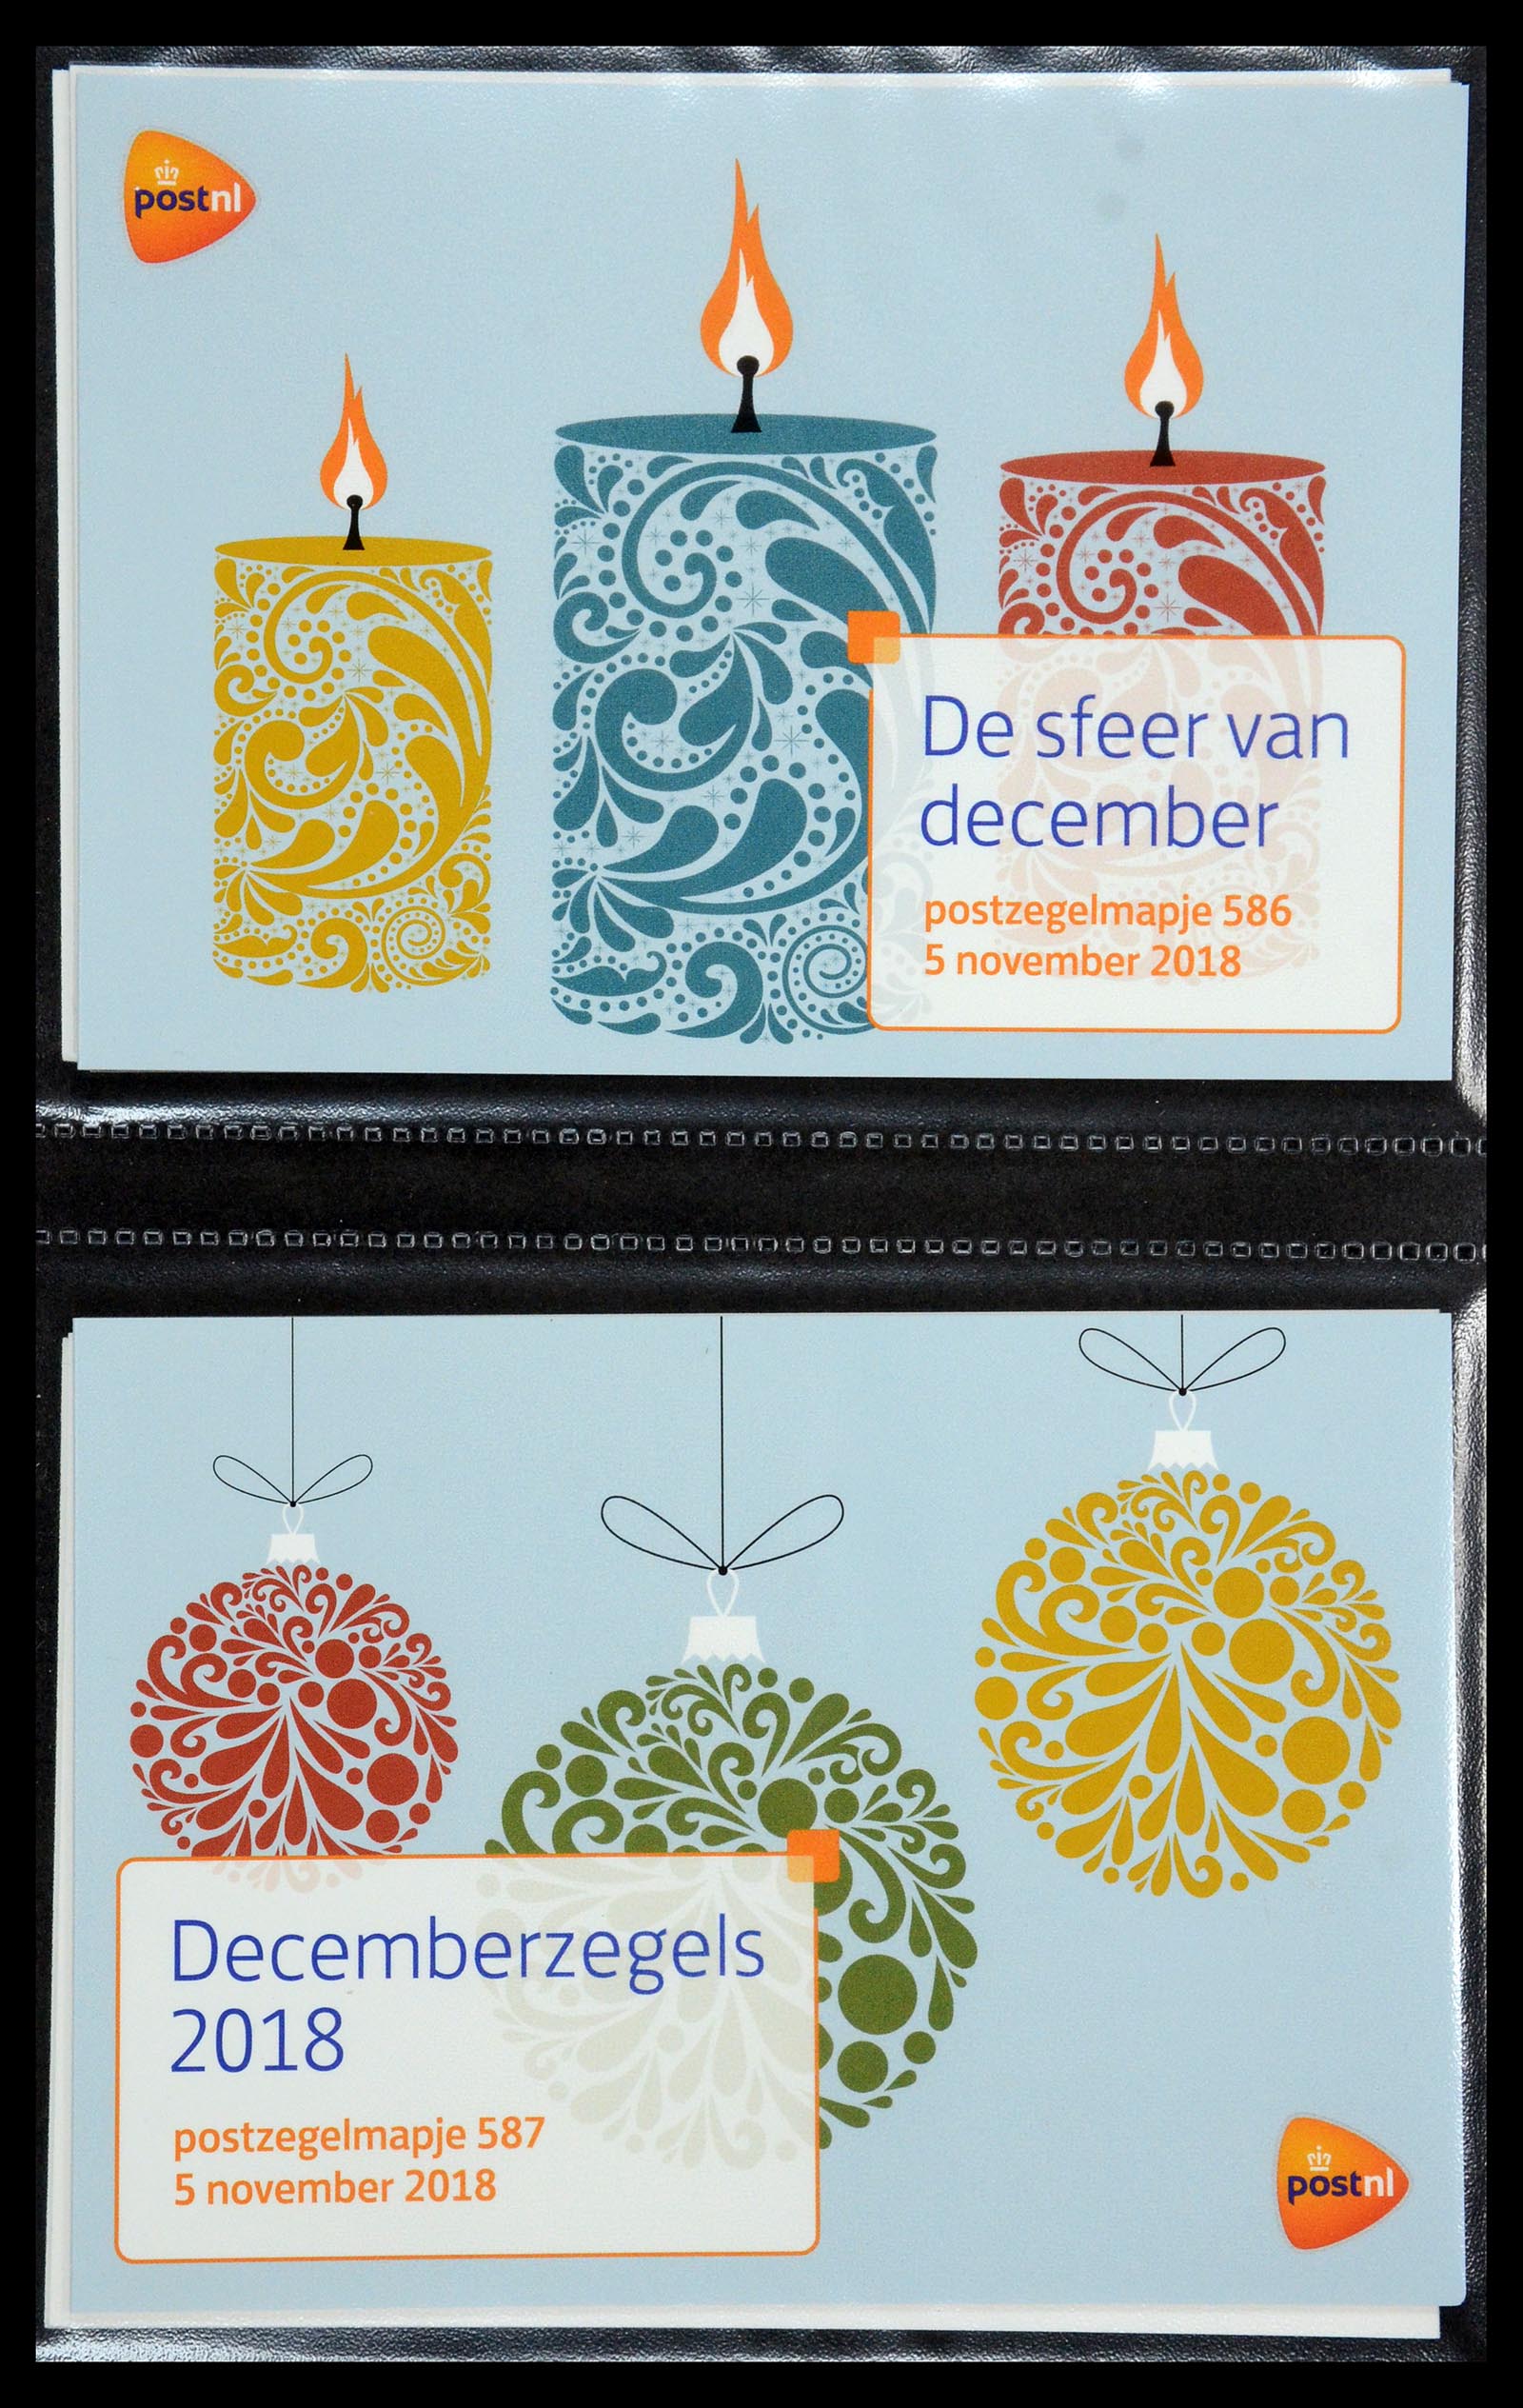 35144 355 - Stamp Collection 35144 Netherlands PTT presentation packs 1982-2021!